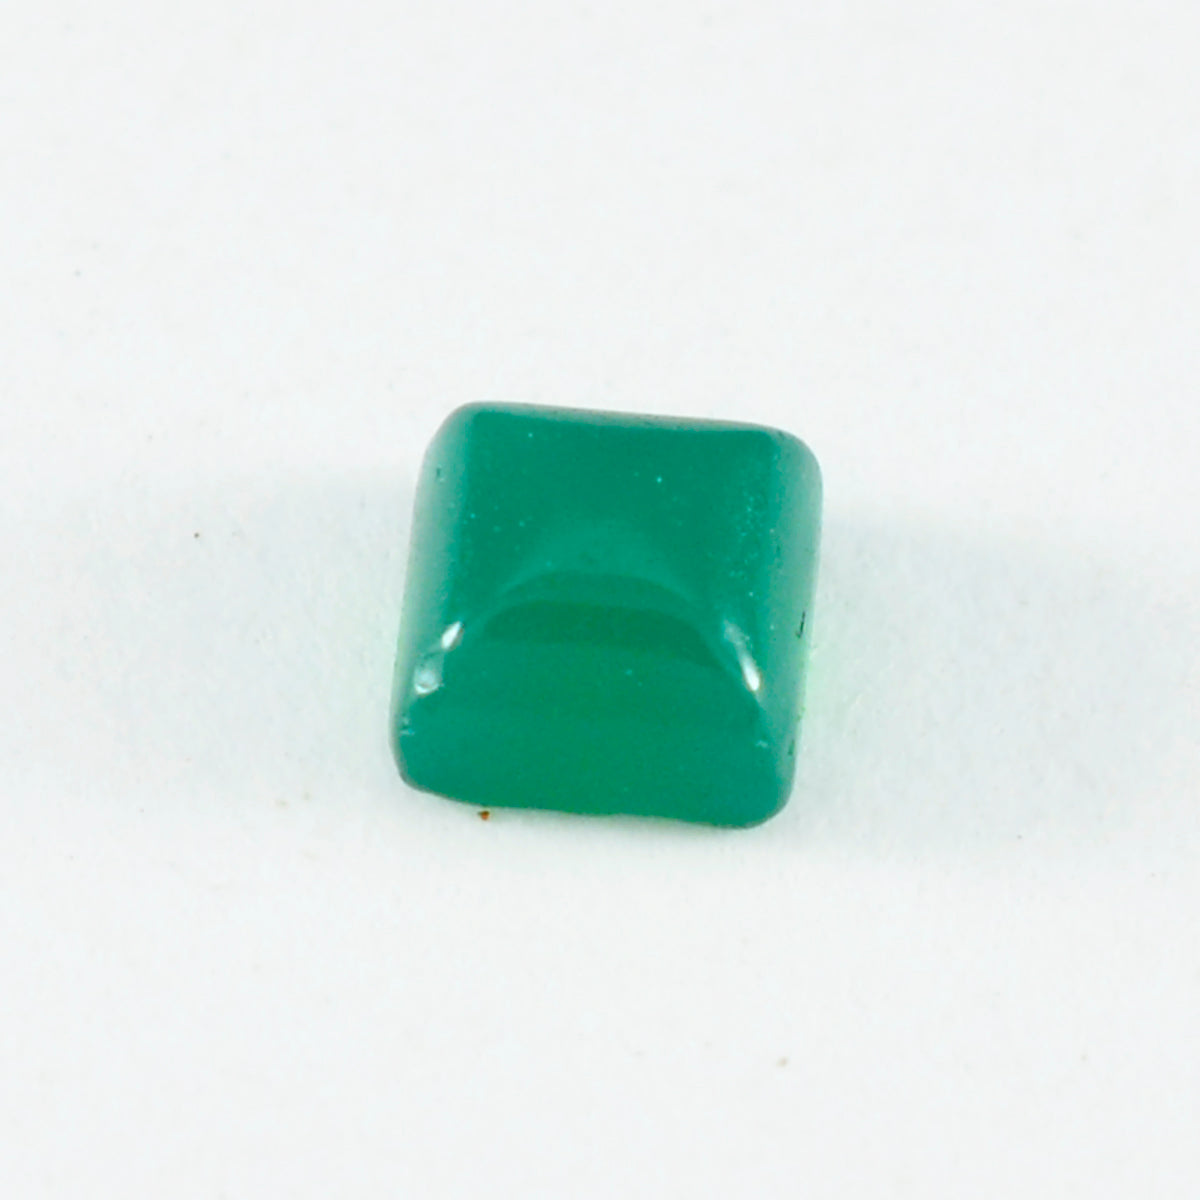 Riyogems 1PC Green Onyx Cabochon 11x11 mm Square Shape handsome Quality Stone